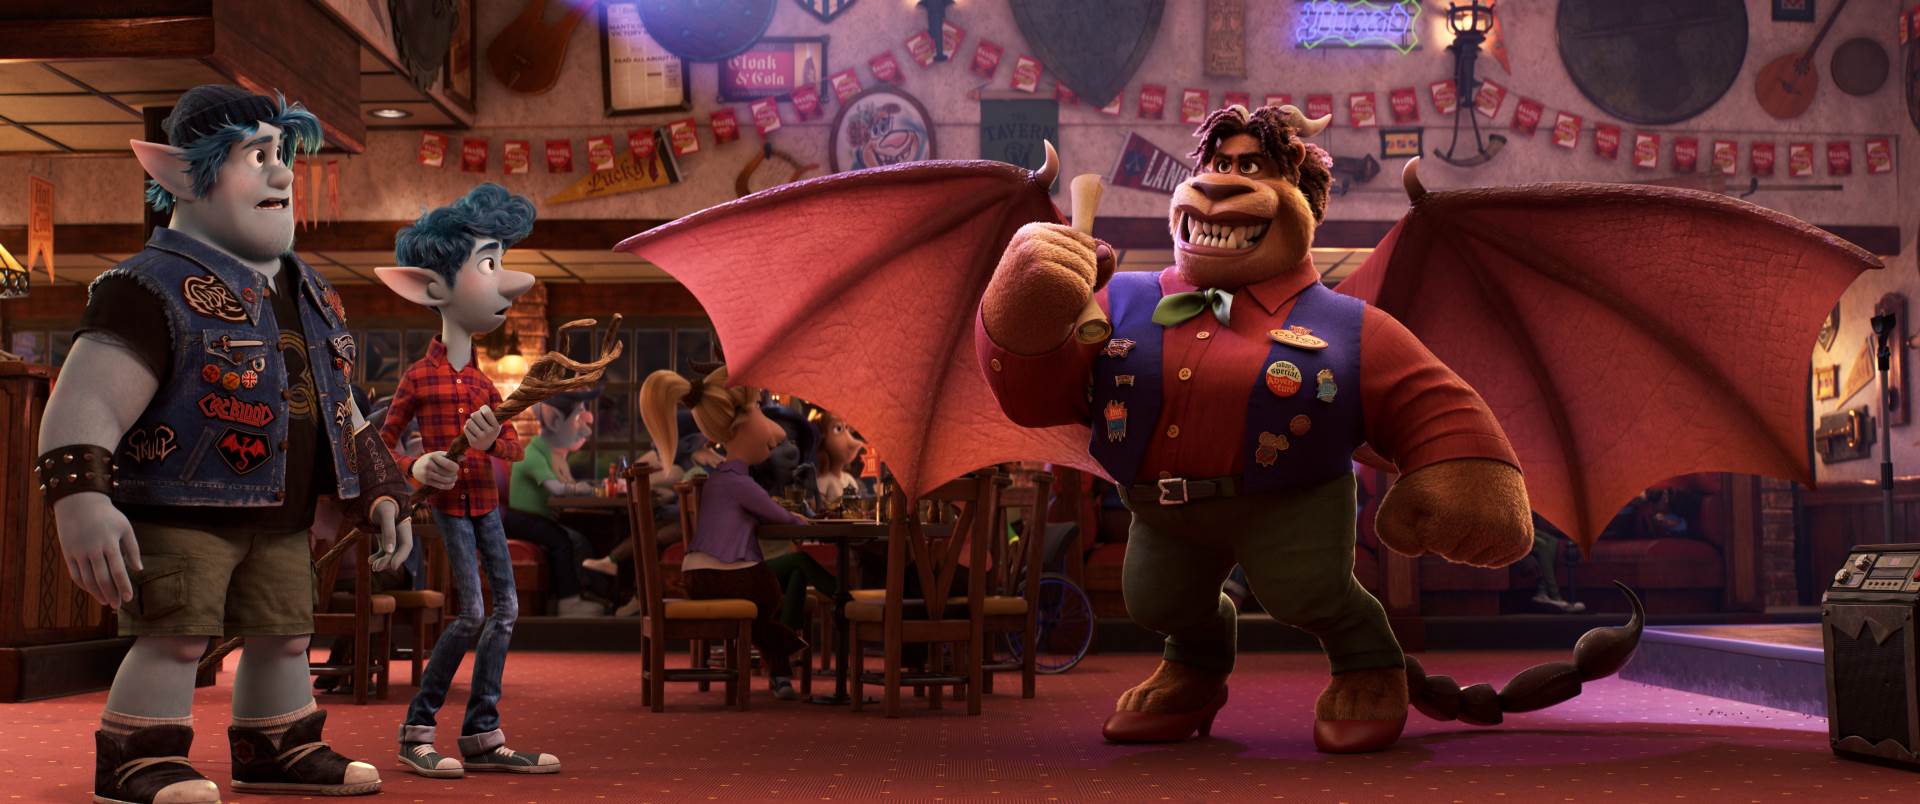 U kina stiže 'Naprijed', nova animacija Disney - Pixar radionice